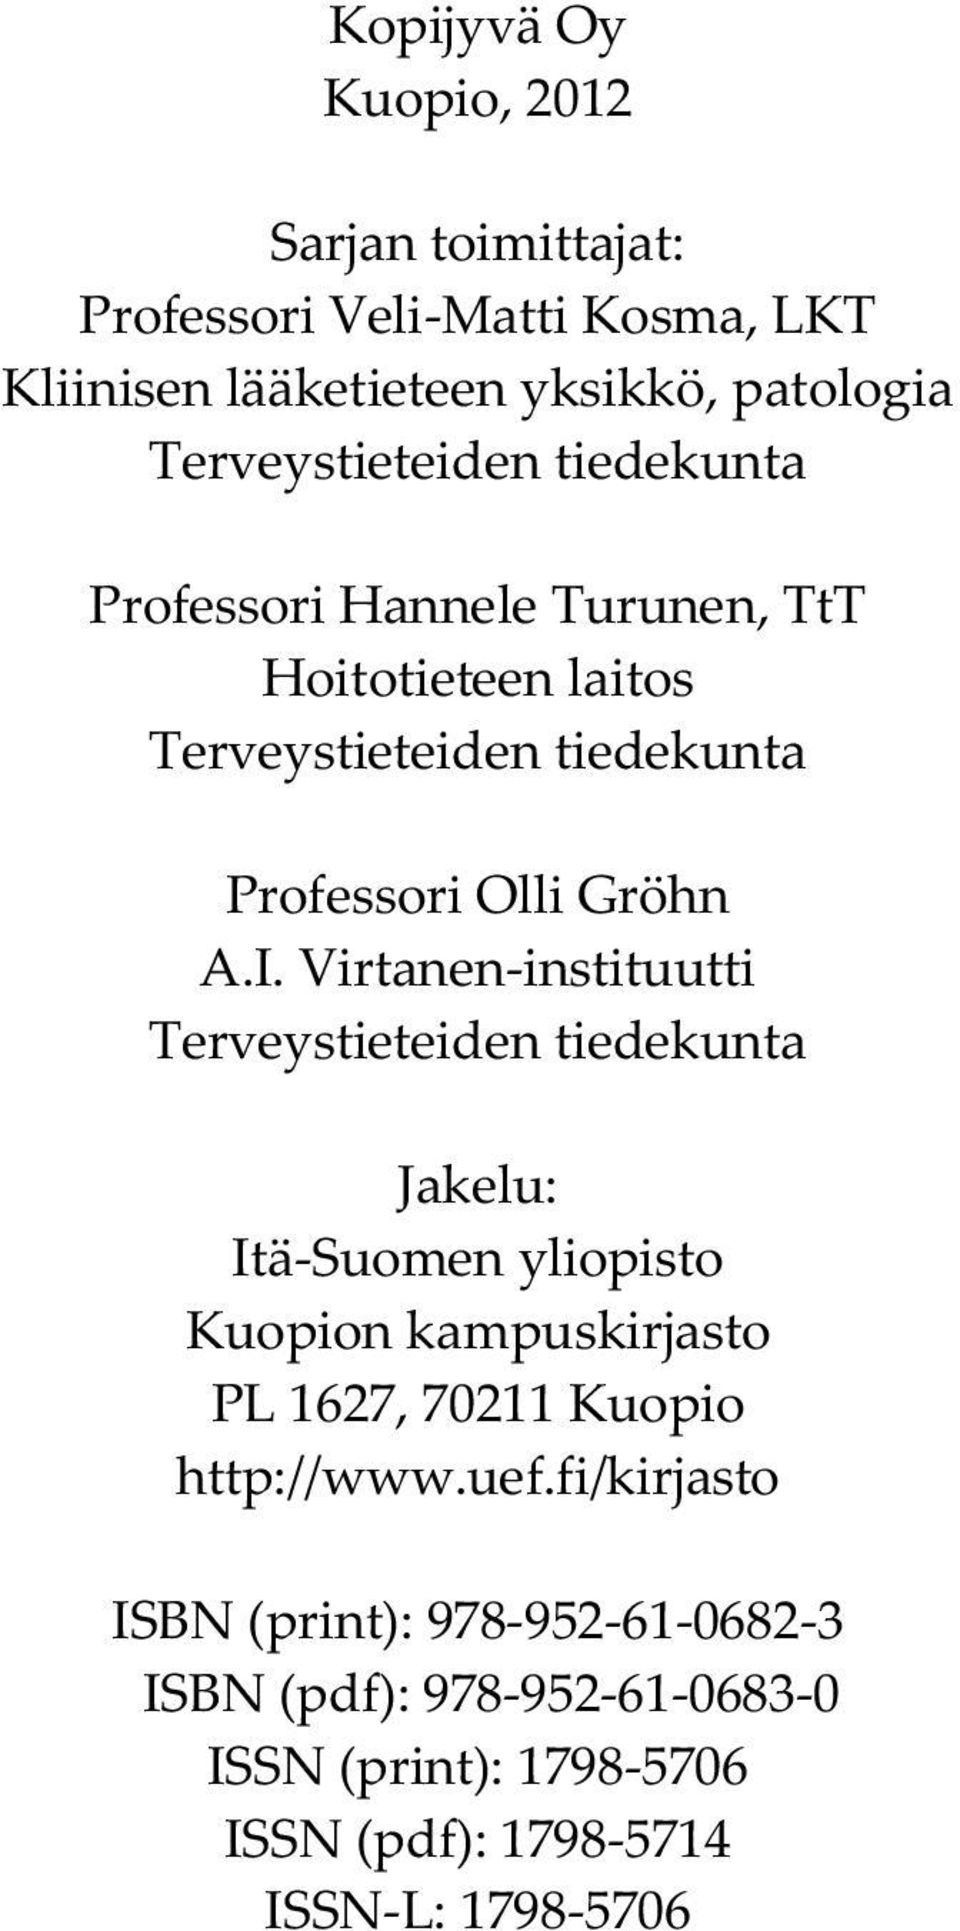 I. Virtanen-instituutti Terveystieteiden tiedekunta Jakelu: Itä-Suomen yliopisto Kuopion kampuskirjasto PL 1627, 70211 Kuopio